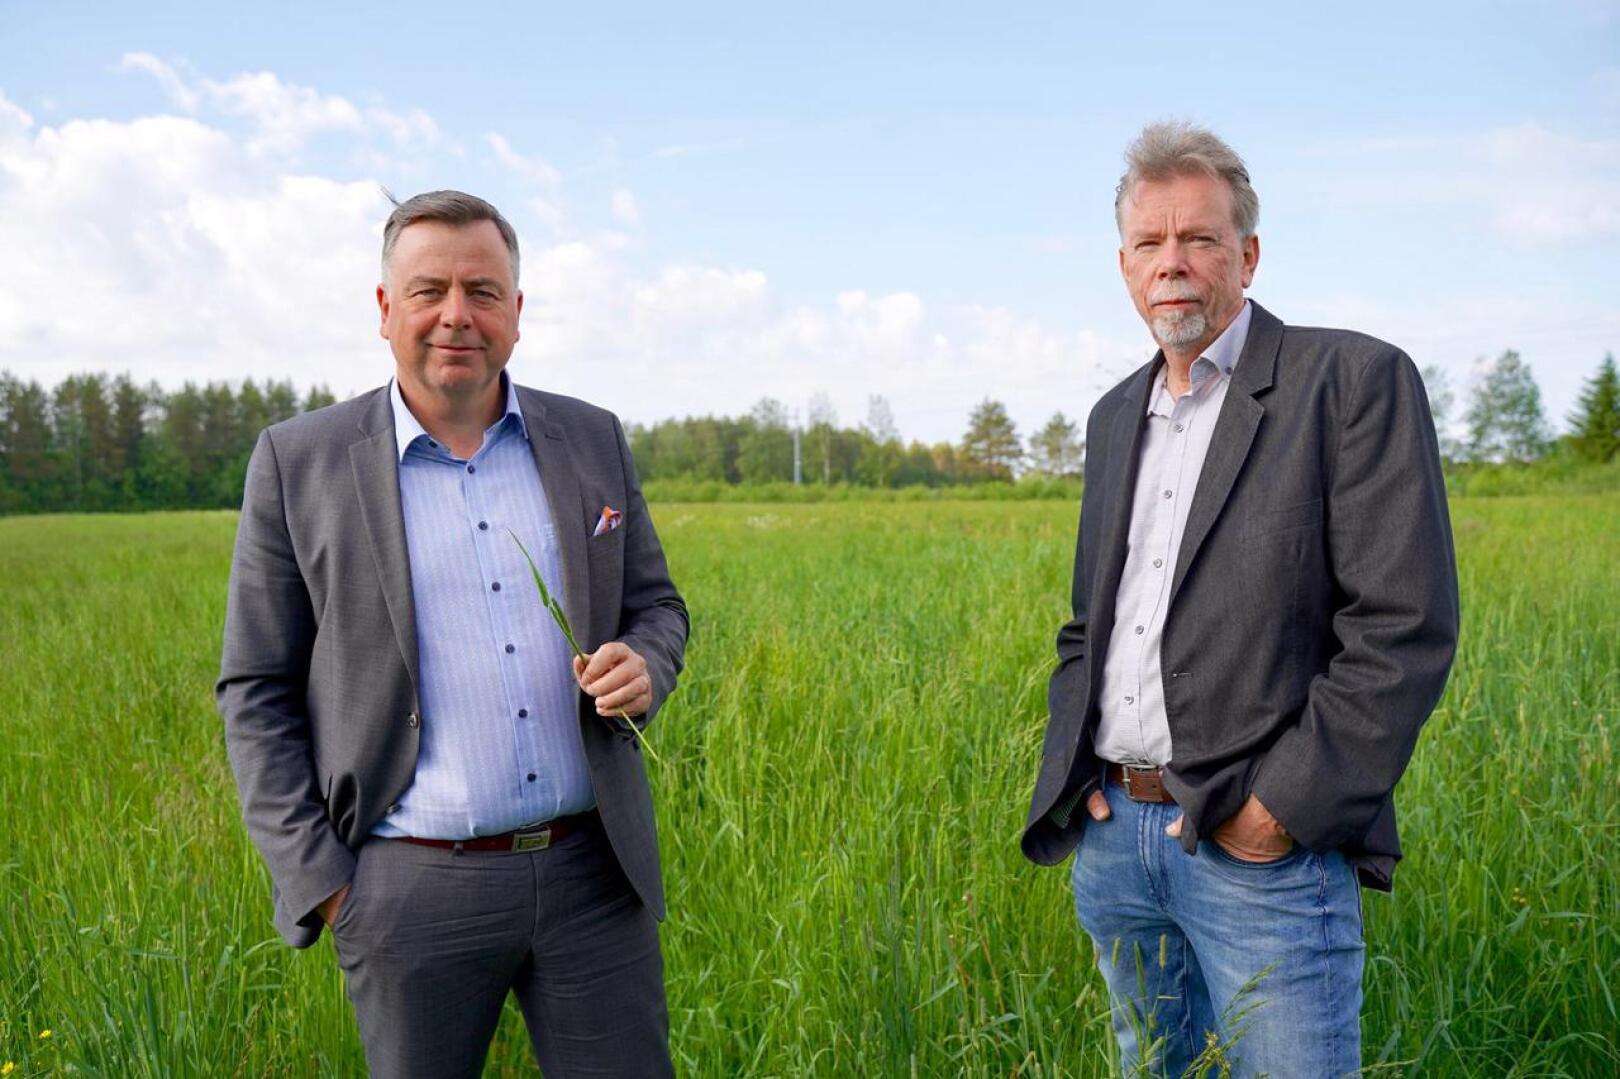 Pedersören kunnanjohtaja Stefan Svenfors (vas.) ja kunnan konserniyhtiön toimitusjohtaja Kjell Gripenberg sekä heinäpelto, joka tulee tuottamaan pääasiallisen raaka-aineen Kolppiin rakennettavalle biokaaasulaitokselle.                        